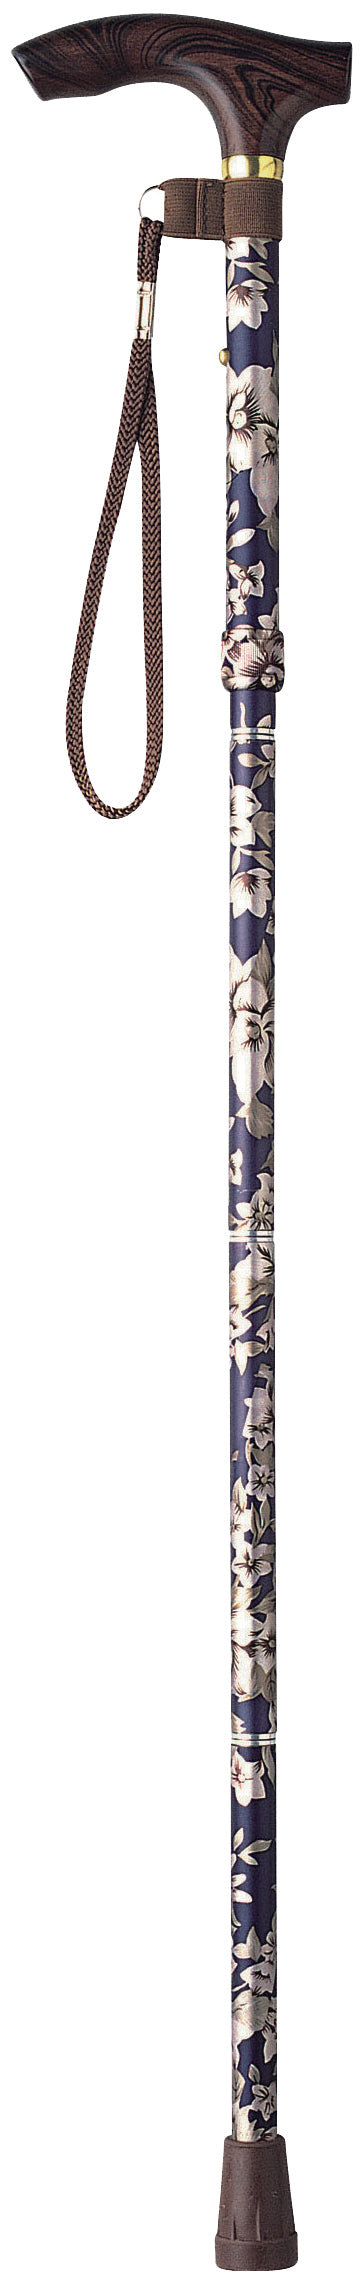 日本TacaoF 摺合式花紋拐杖的窄身頸部設計，有助使用者易於緊握手柄，減低因長時間用力握緊而造成的疲勞，另設有6段可調較高度供選擇，上落樓梯或斜路時，可按情況調整合適高度。此外，拐杖採用特製物料製造，比一般拐杖更防刮花及耐用，保持拐杖美觀。日本TacaoF 摺合式花紋拐杖備有膠圈可紮緊摺疊後的拐杖，方便存放及攜帶，接口順滑整齊，易於翻開及摺合拐杖，隨附的拐杖繩亦可防止拐杖跌下。